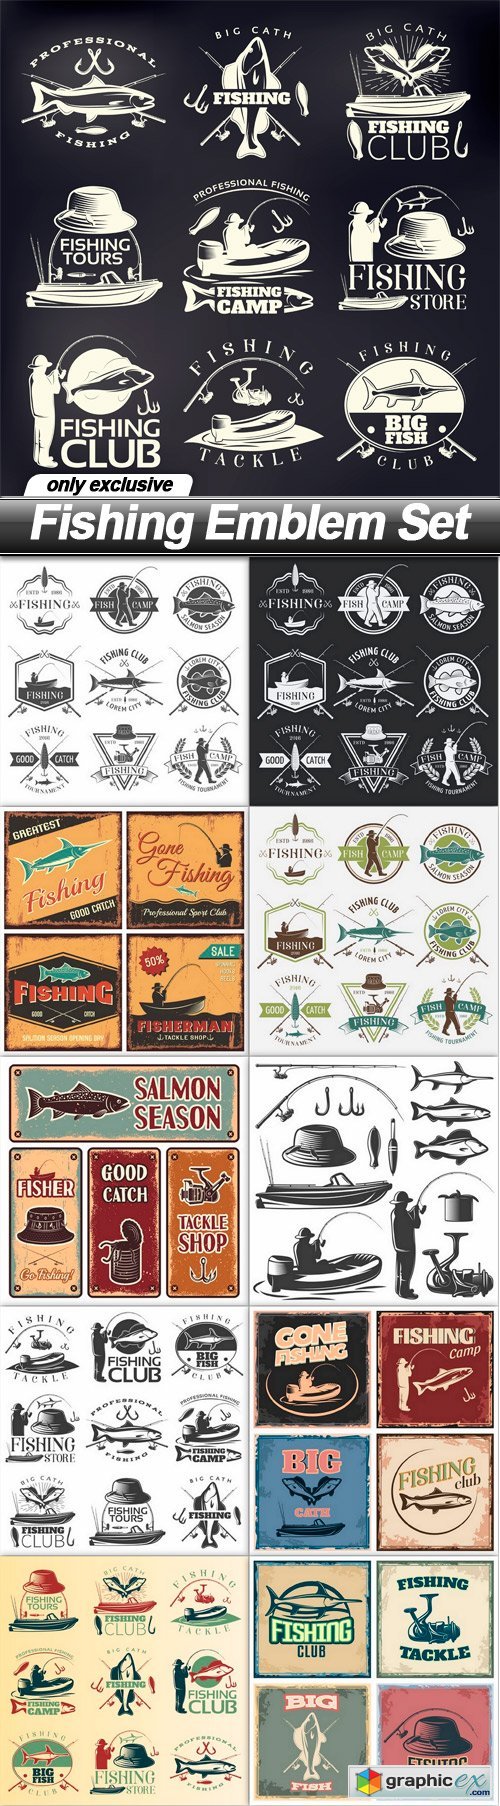 Fishing Emblem Set - 11 EPS